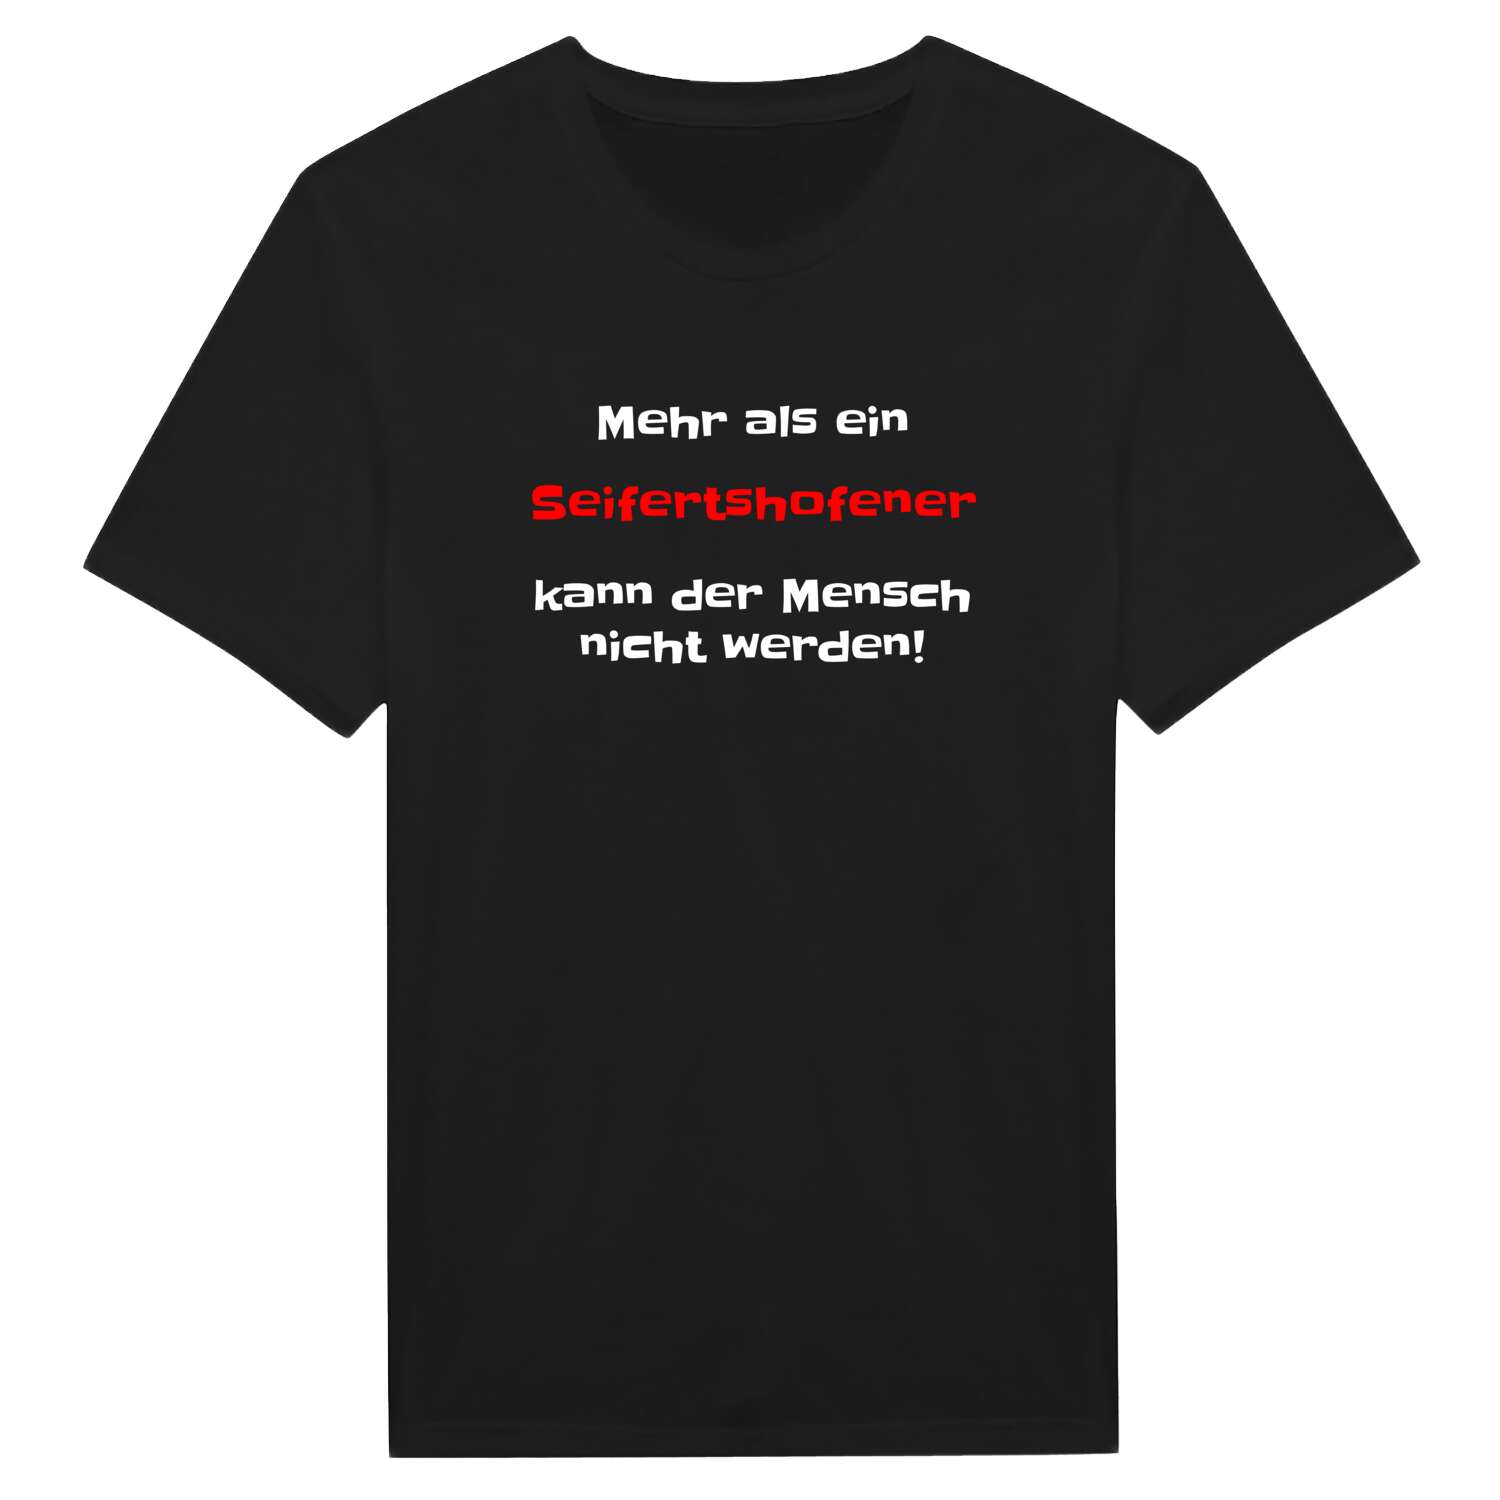 Seifertshofen T-Shirt »Mehr als ein«